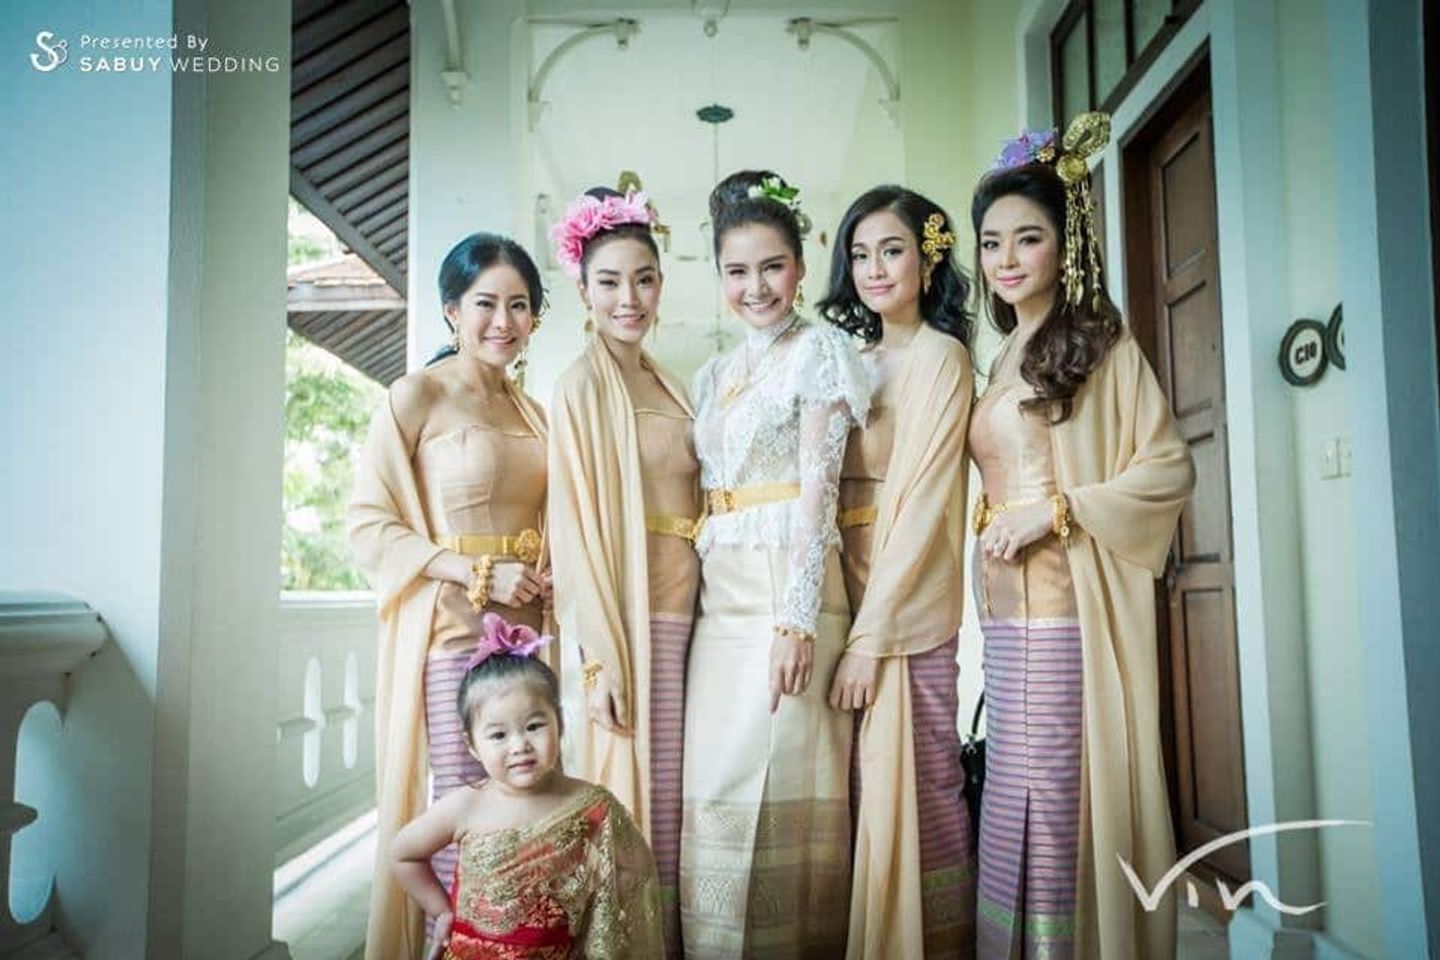 เพื่อนเจ้าสาว,ชุดเพื่อนเจ้าสาว,ชุดไทย,งานหมั้น,พิธีหมั้น,งานแต่งตอนเช้า,พิธีแต่งงาน,พิธีแต่งงานแบบไทย,เจ้าสาว 15 ชุดไทยเพื่อนเจ้าสาว สวยงามตามประเพณีไทย